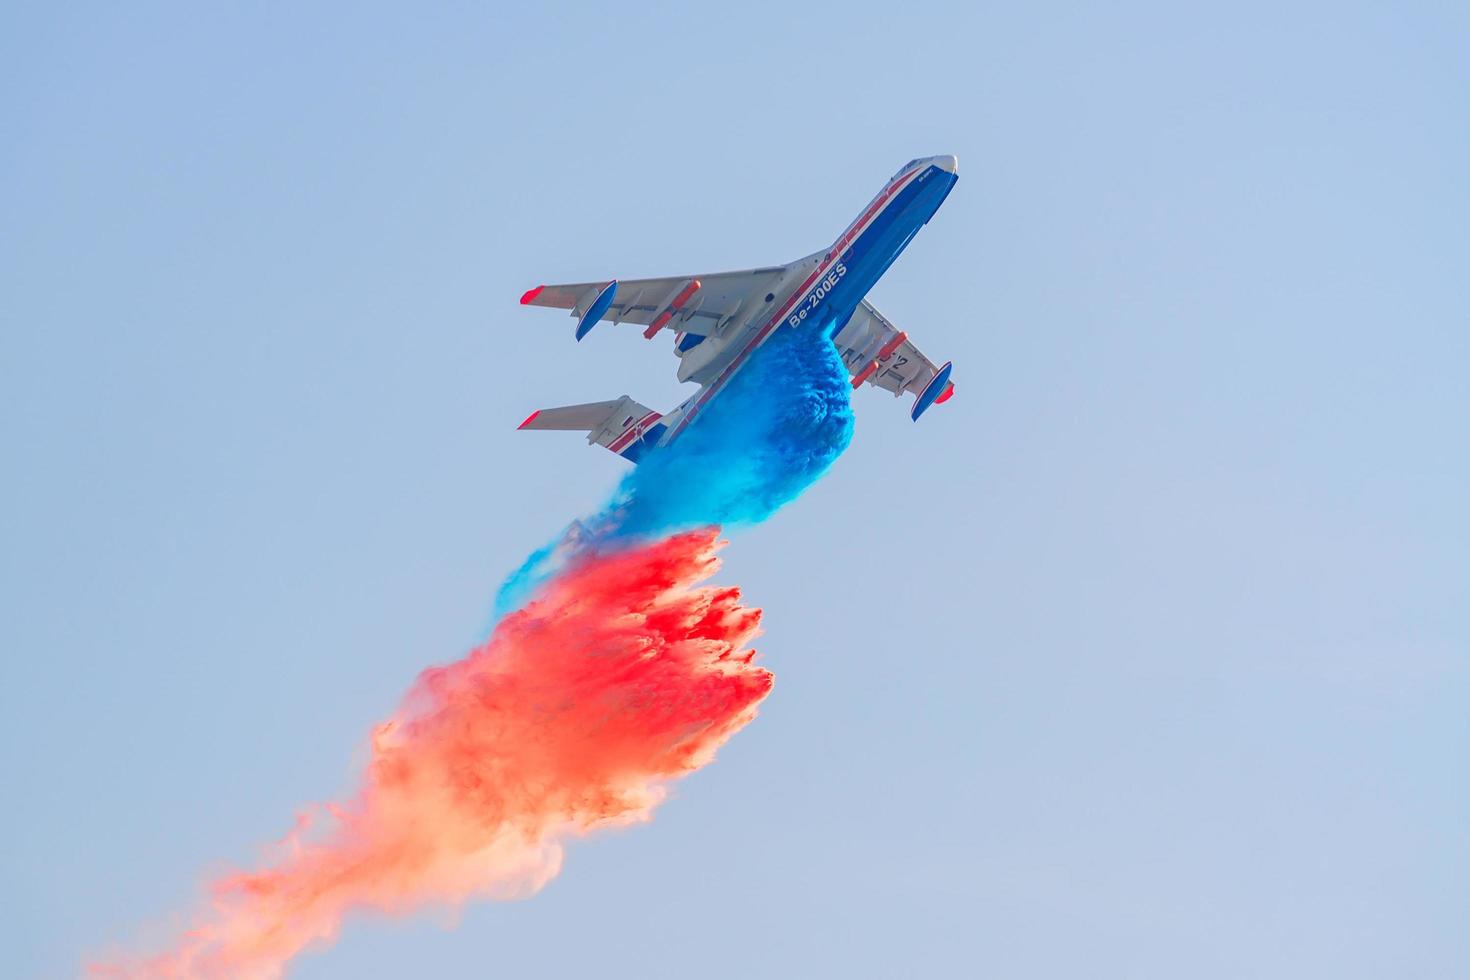 zhukovsky, Ryssland, 2019 - beriev be-200 flygande brandbekämpning från luften häll vatten över elden för en demoflygning foto